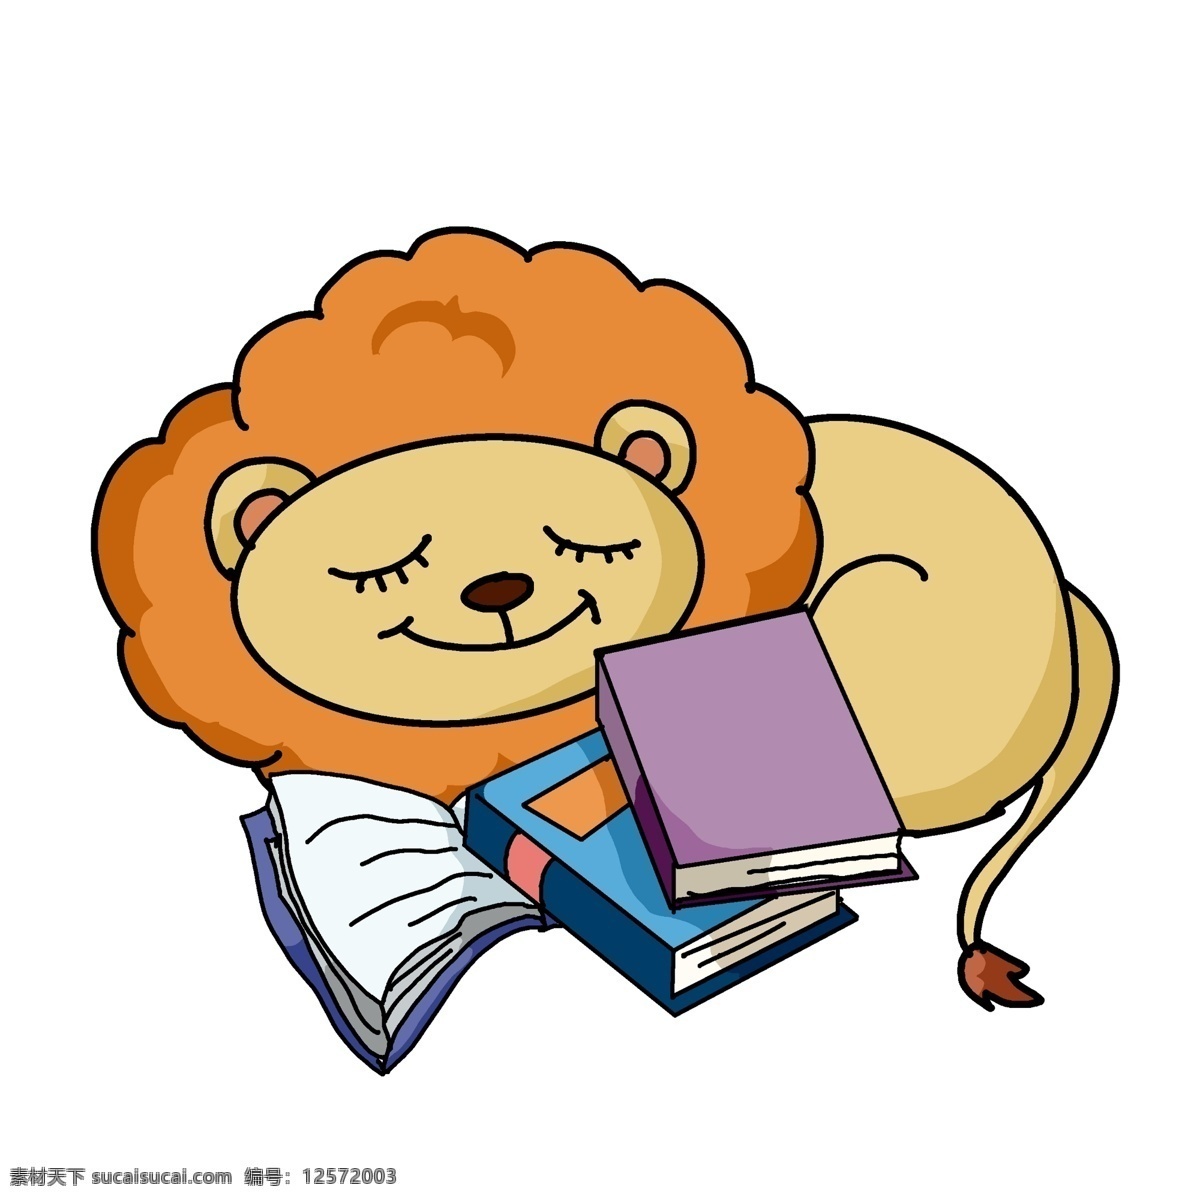 书本 睡觉 小 狮子 读书 学习 儿童读书节 睡觉的小狮子 学习用品 紫色书本 蓝色书本